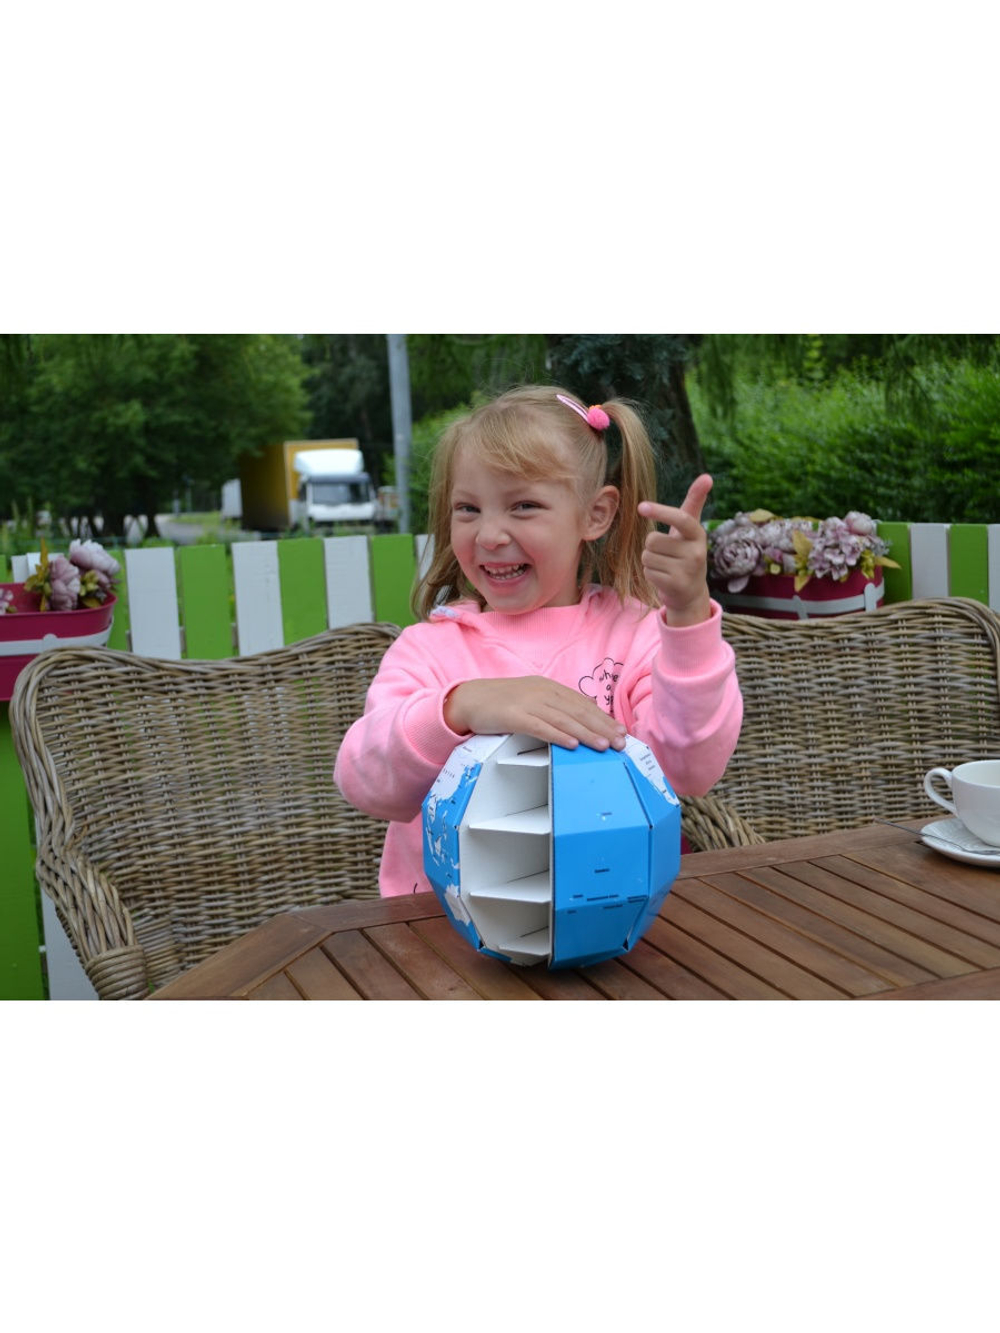 бумажный конструктор 3D пазл глобус Декор для дома, подарок